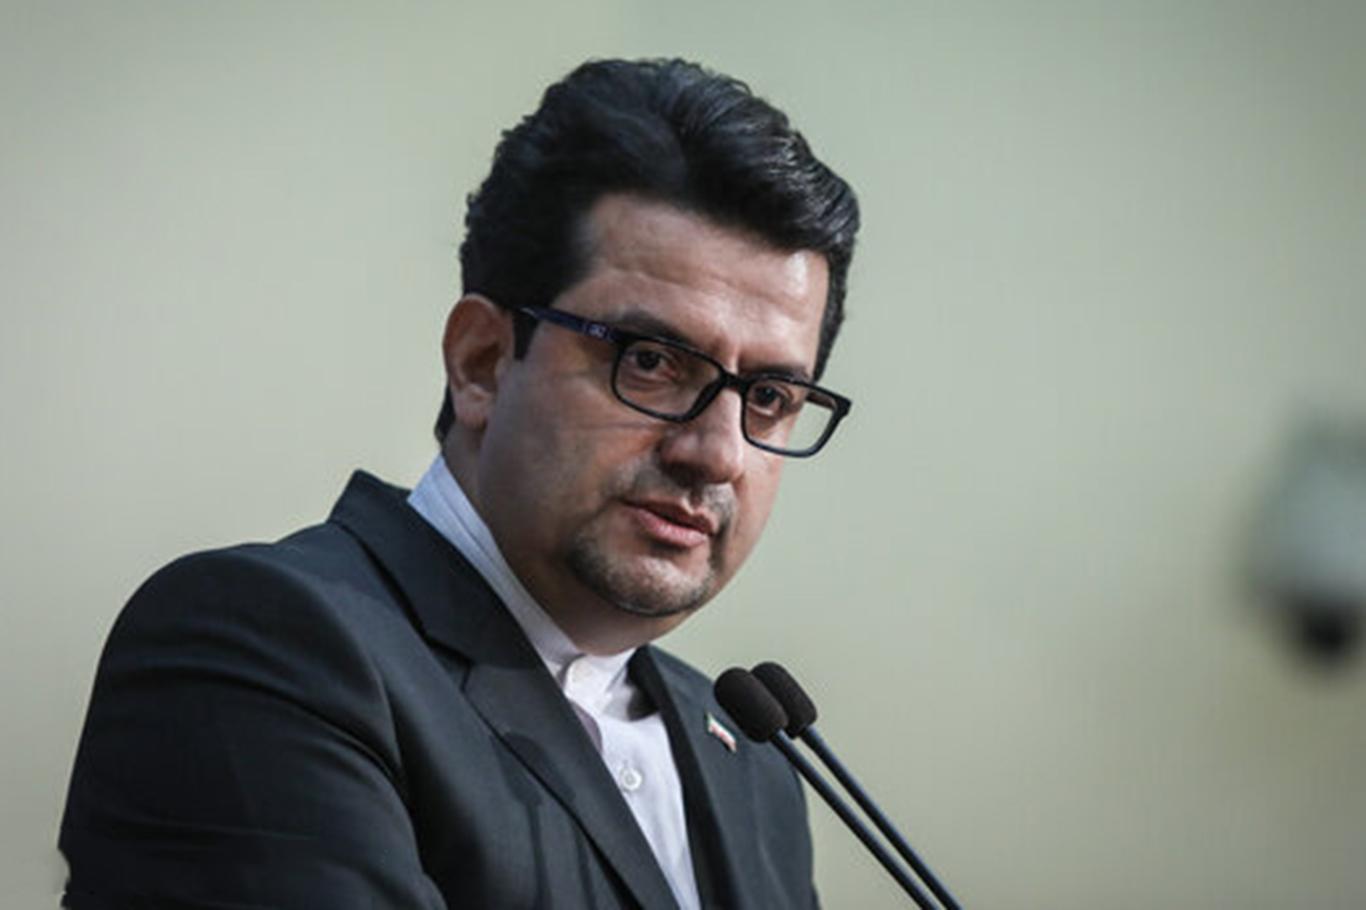 İran'dan Pompeo'nun "SİHA'lı saldırı" iddiasına yalanlama